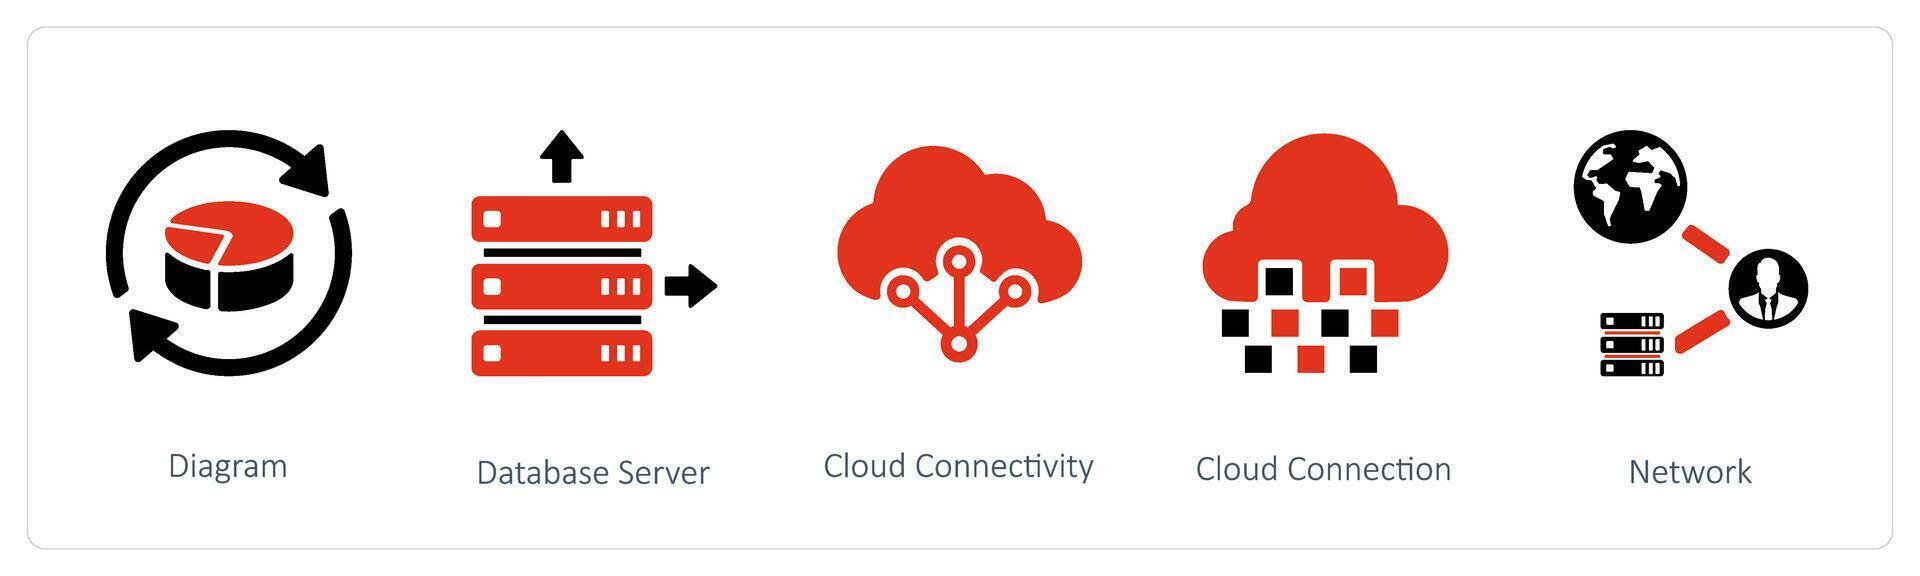 diagrama, base de dados servidor e nuvem conectividade vetor